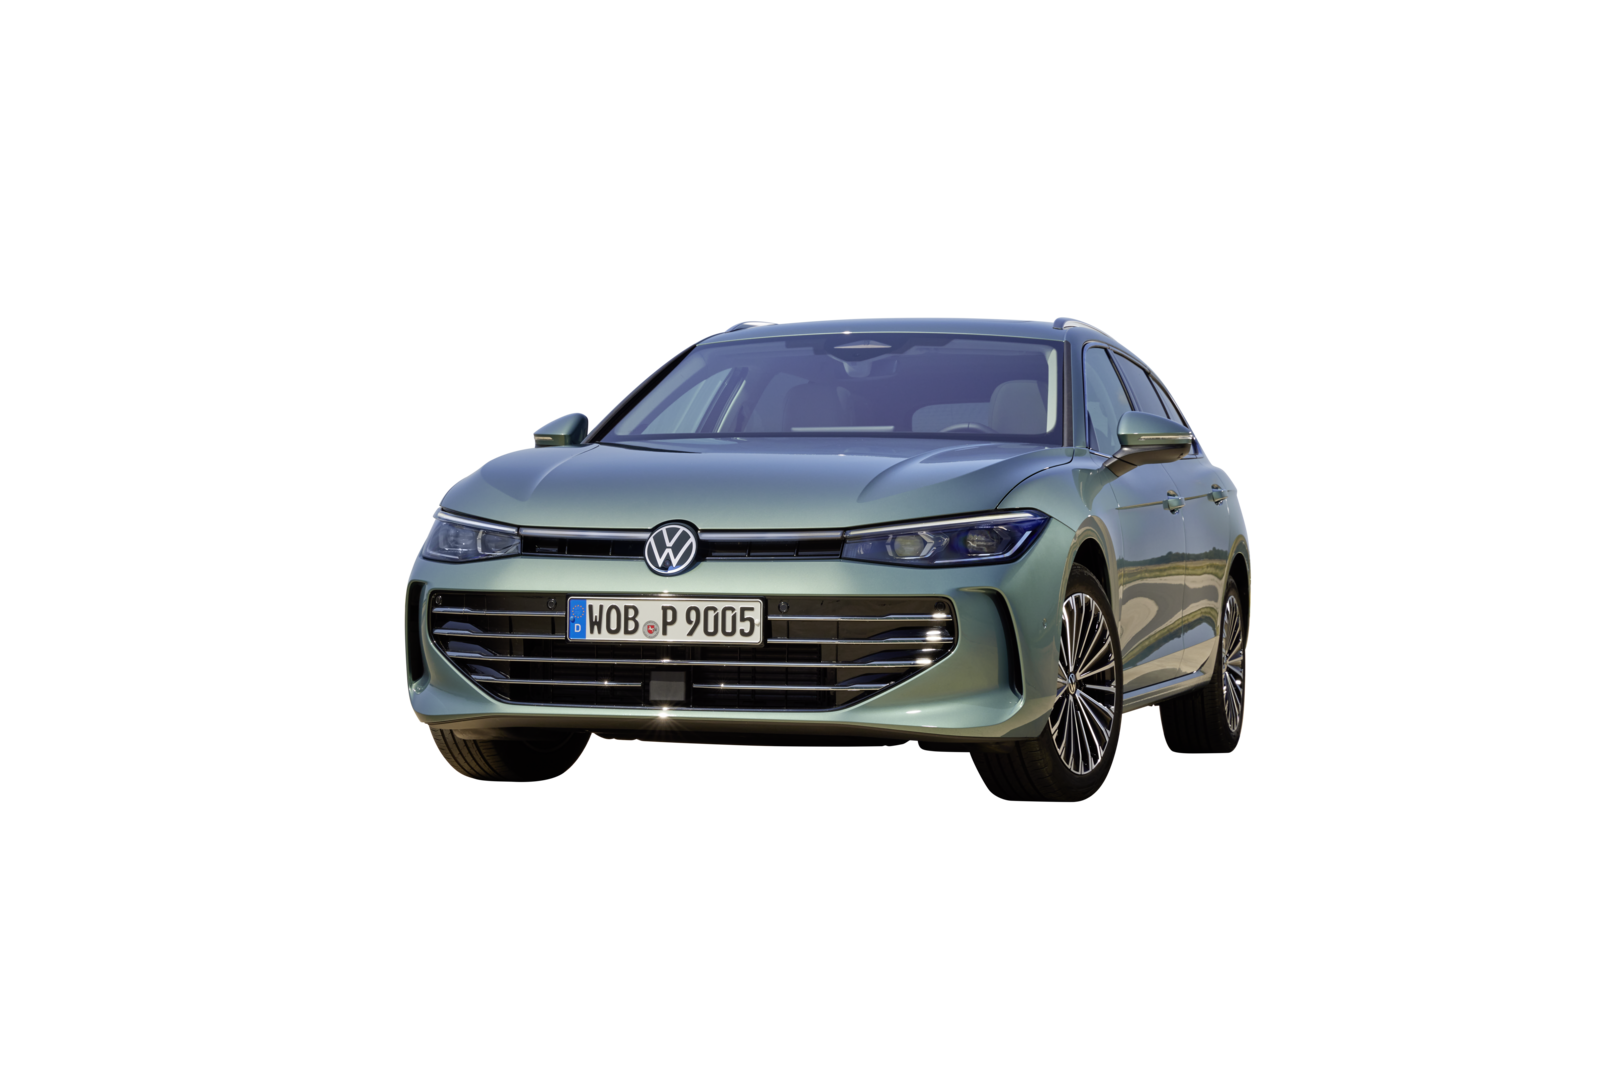 The all-new Volkswagen Passat